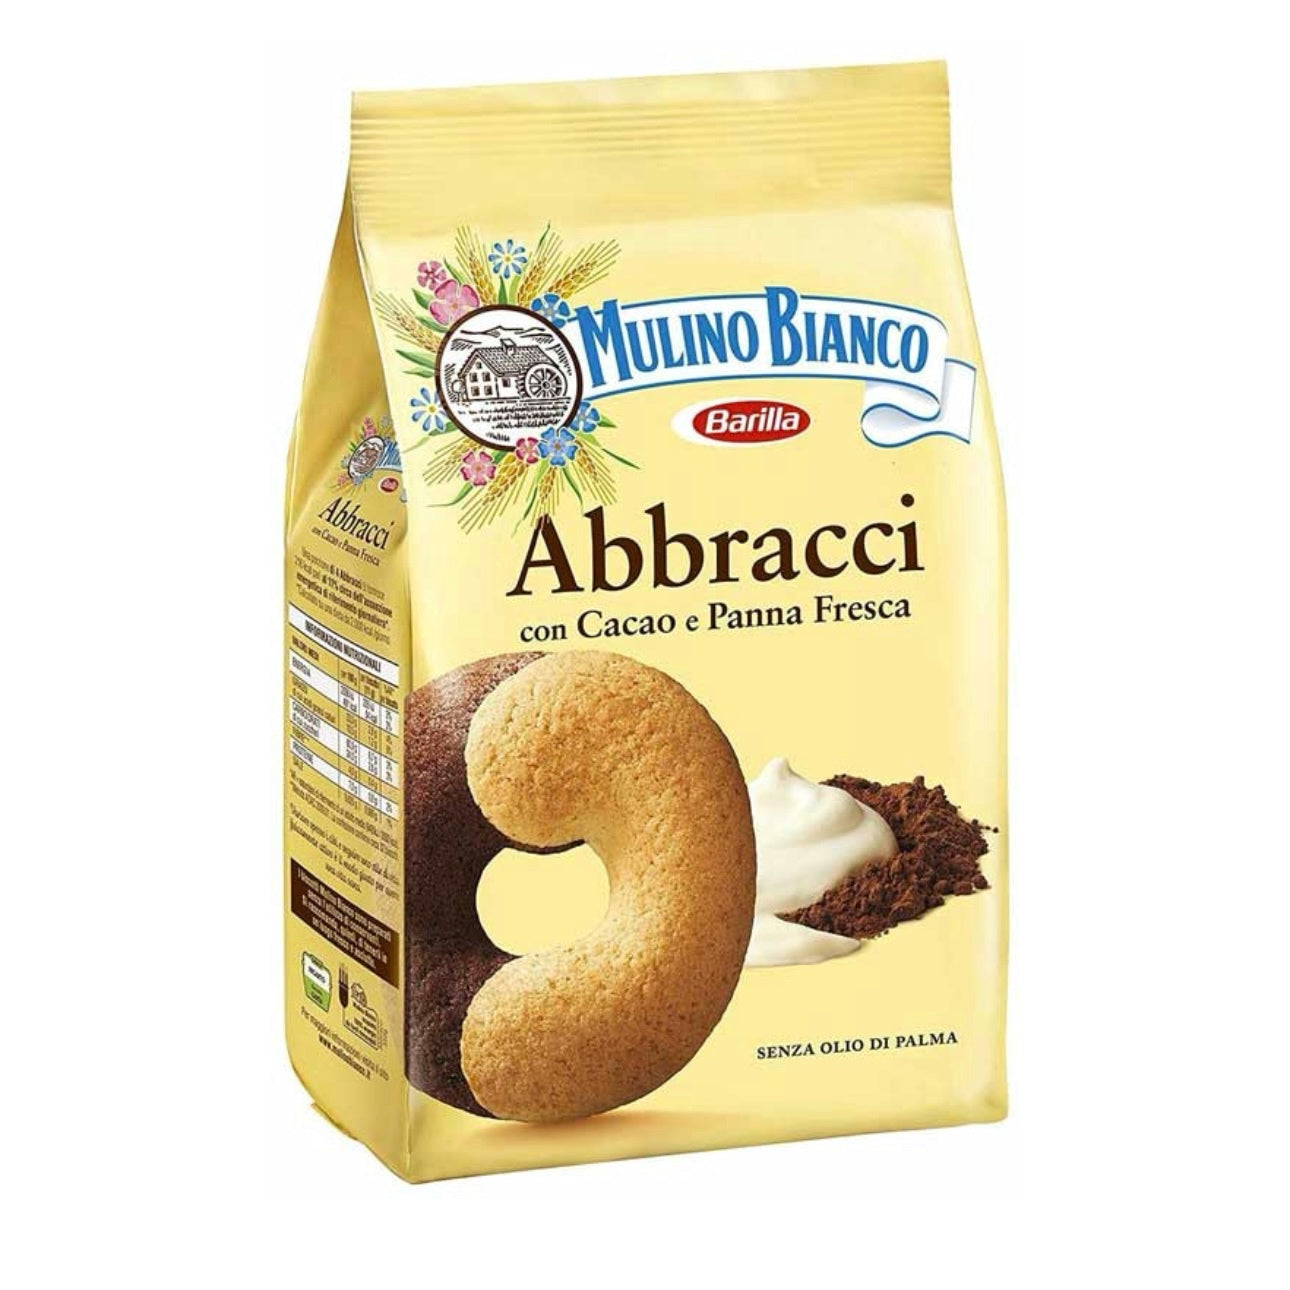 Mulino Bianco Abbracci Shortbread with Cream & Cocoa